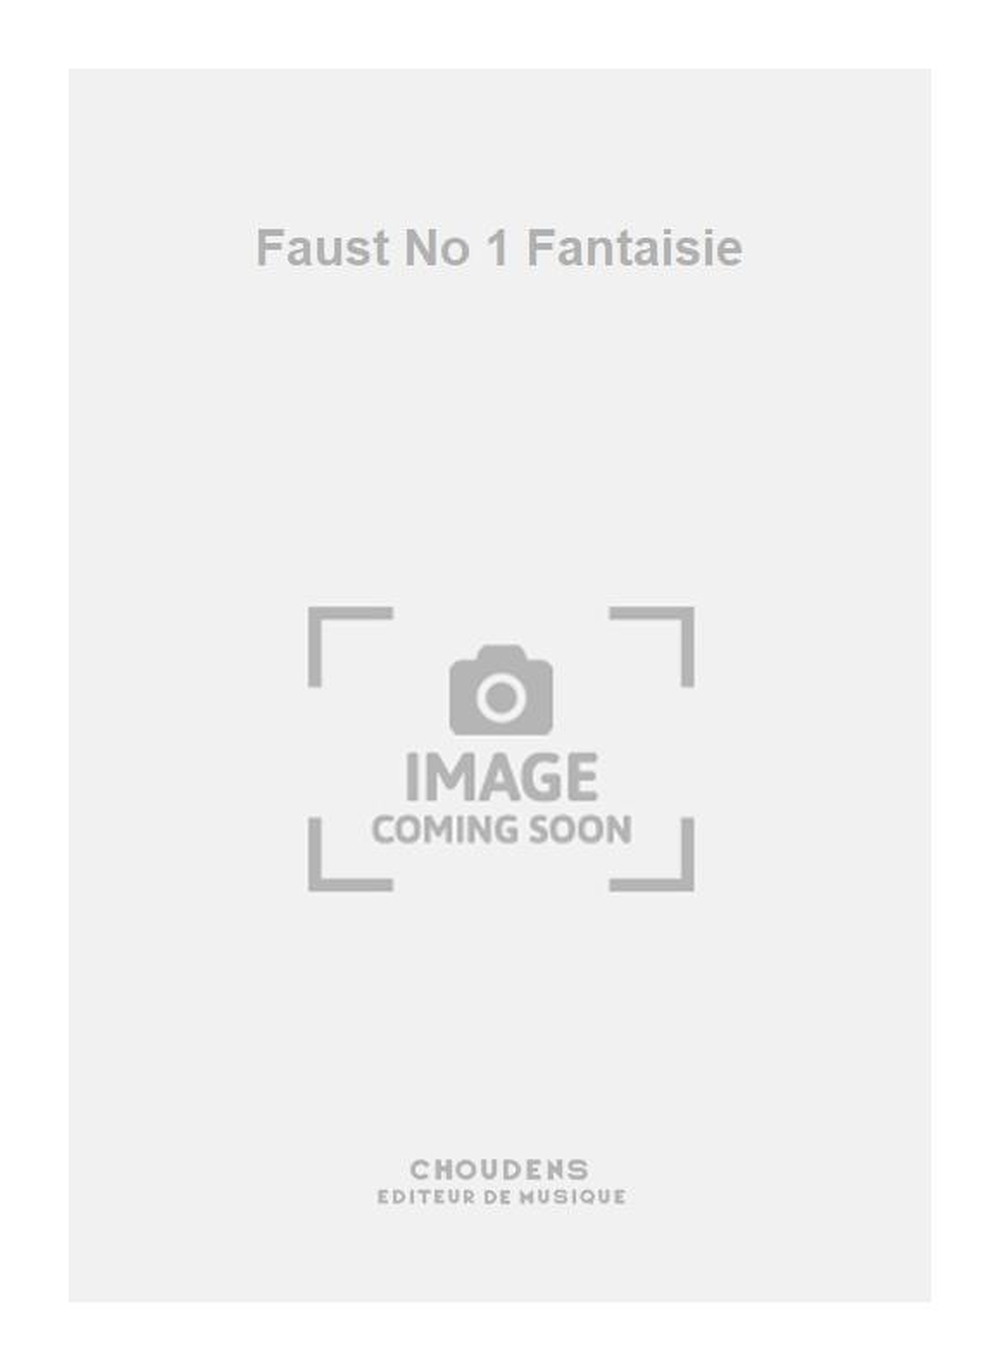 Charles Gounod: Faust No 1 Fantaisie